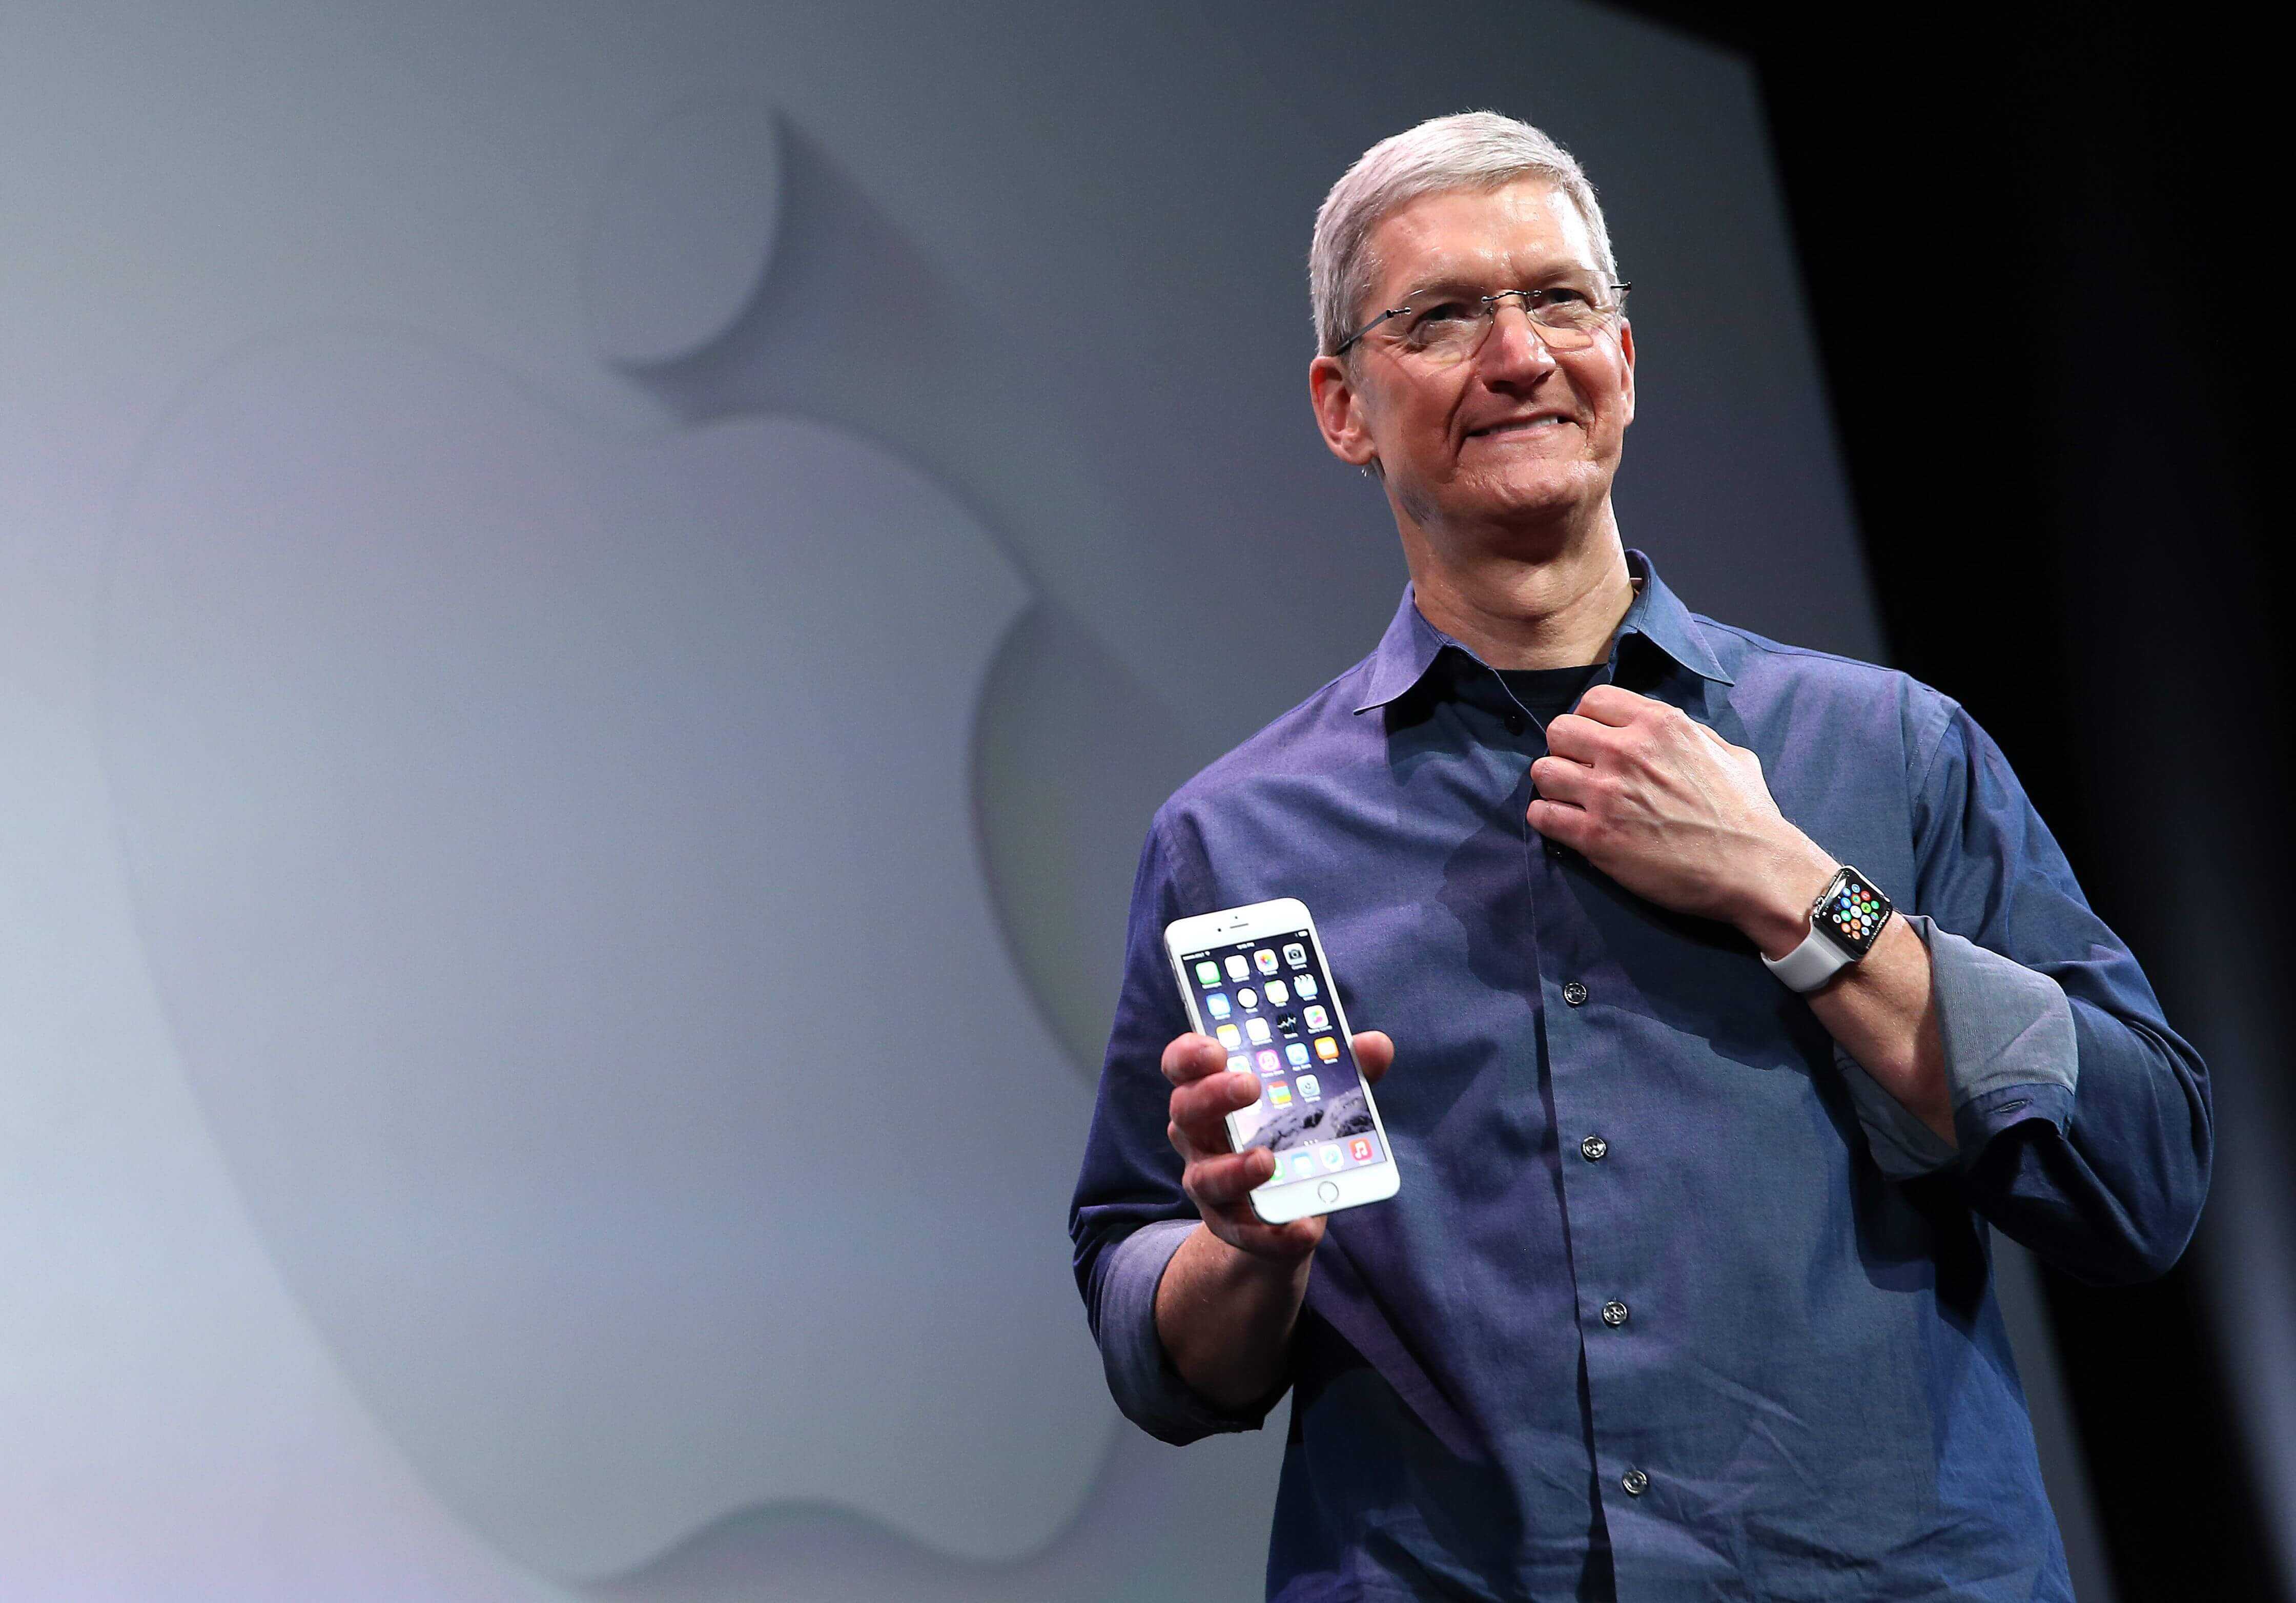 Не можете разблокировать iphone с помощью apple watch? вот быстрое исправление! • оки доки